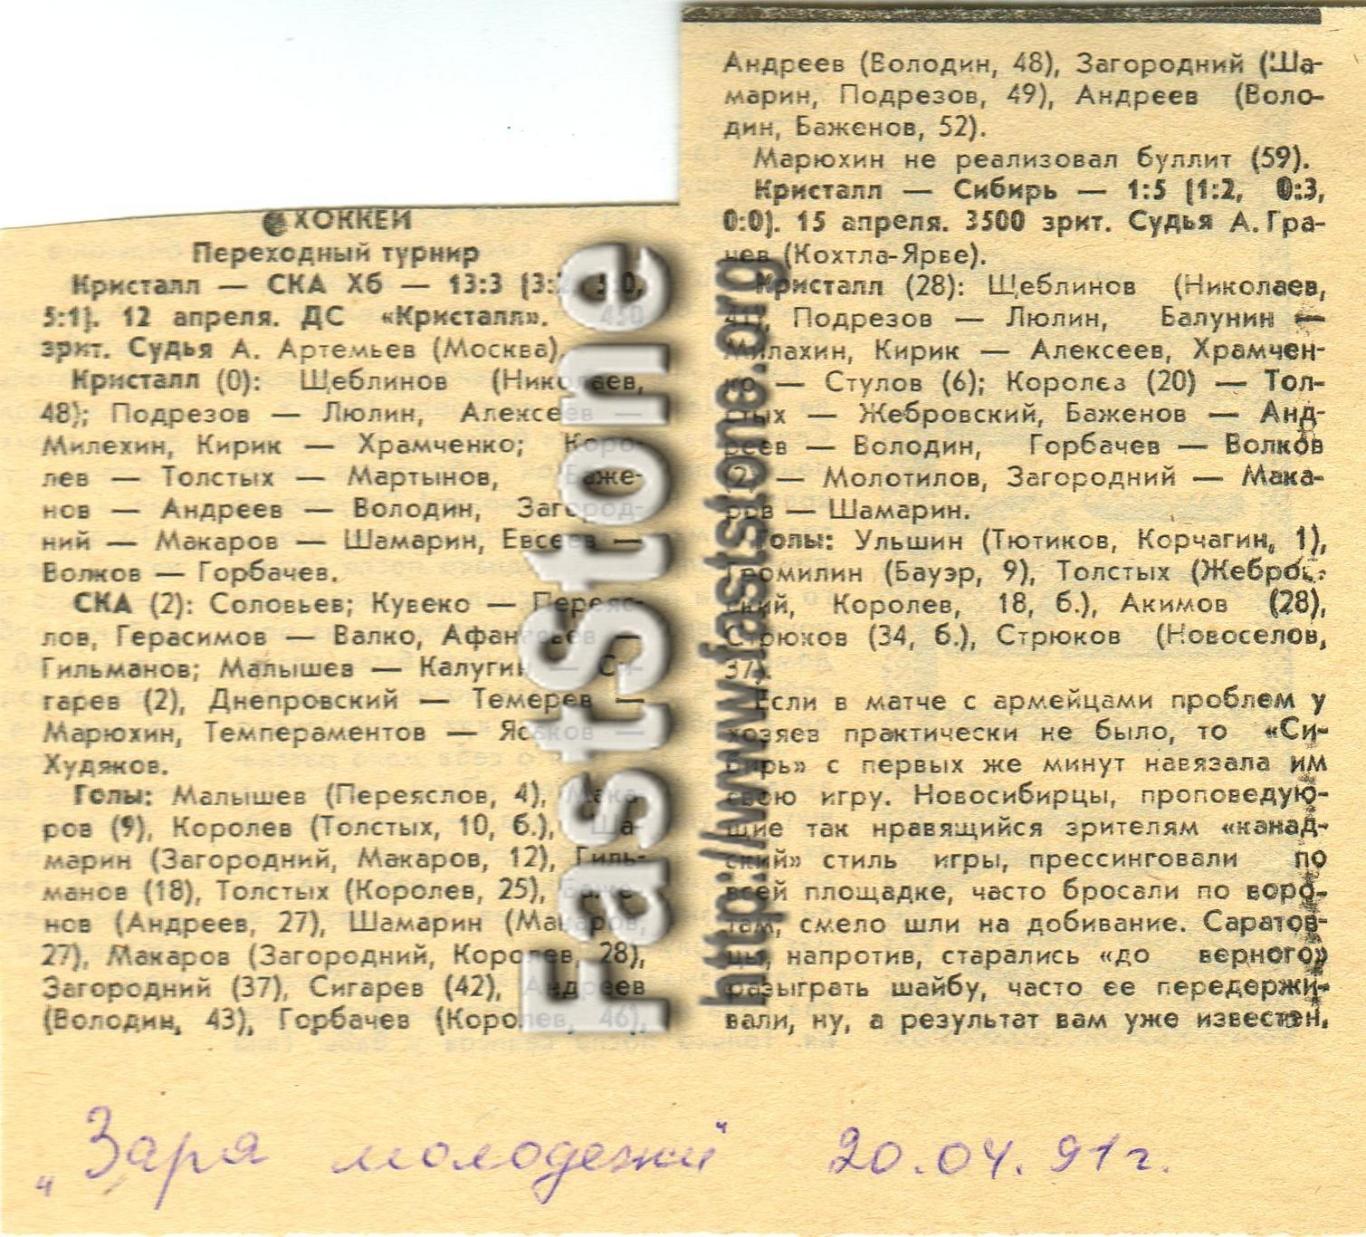 Кристалл Саратов – СКА Хабаровск + Сибирь Новосибирск 12/15.04.1991